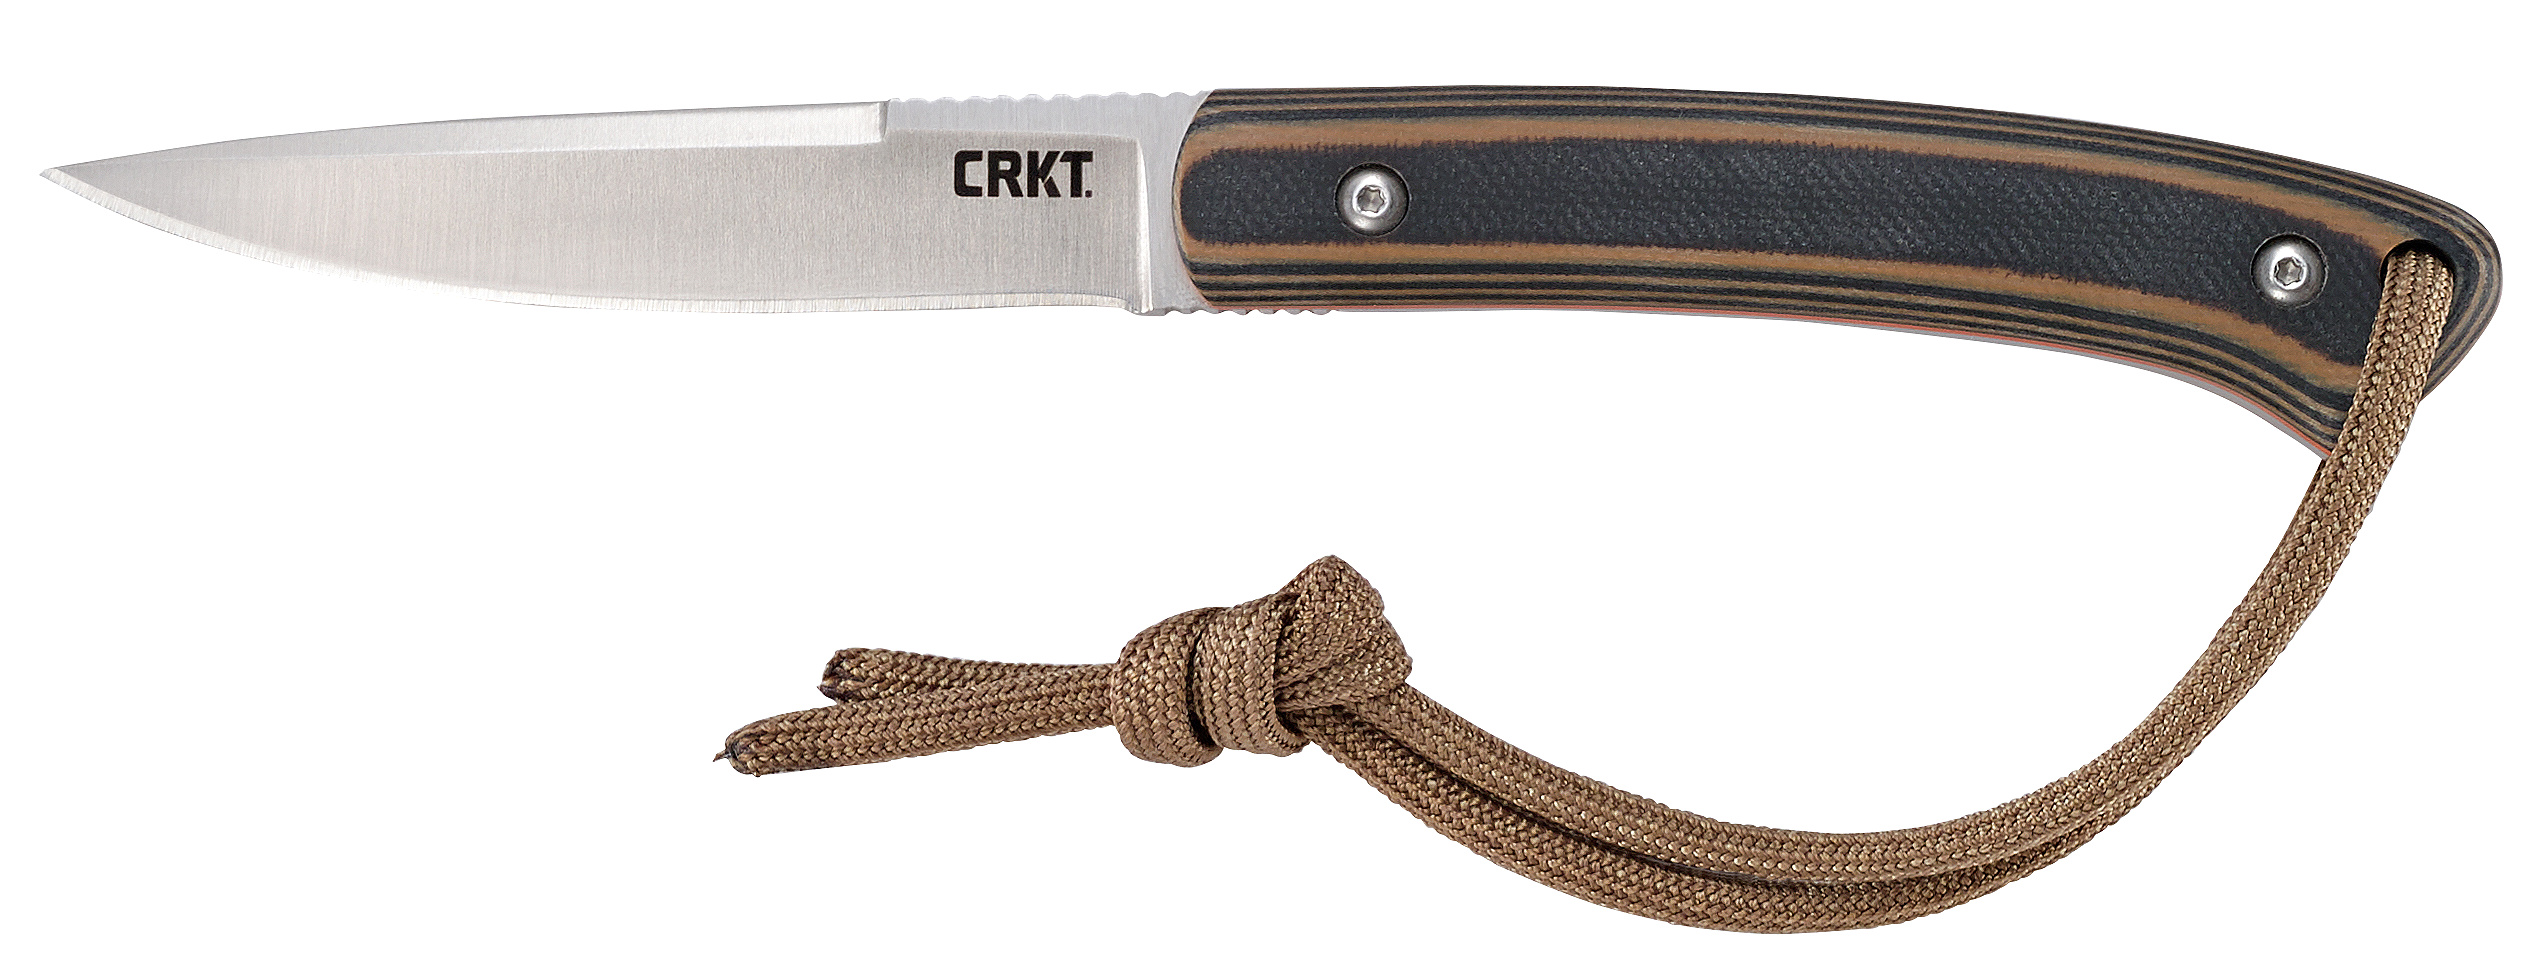 CRKT Biwa, new knife at SHOT Show 2021.